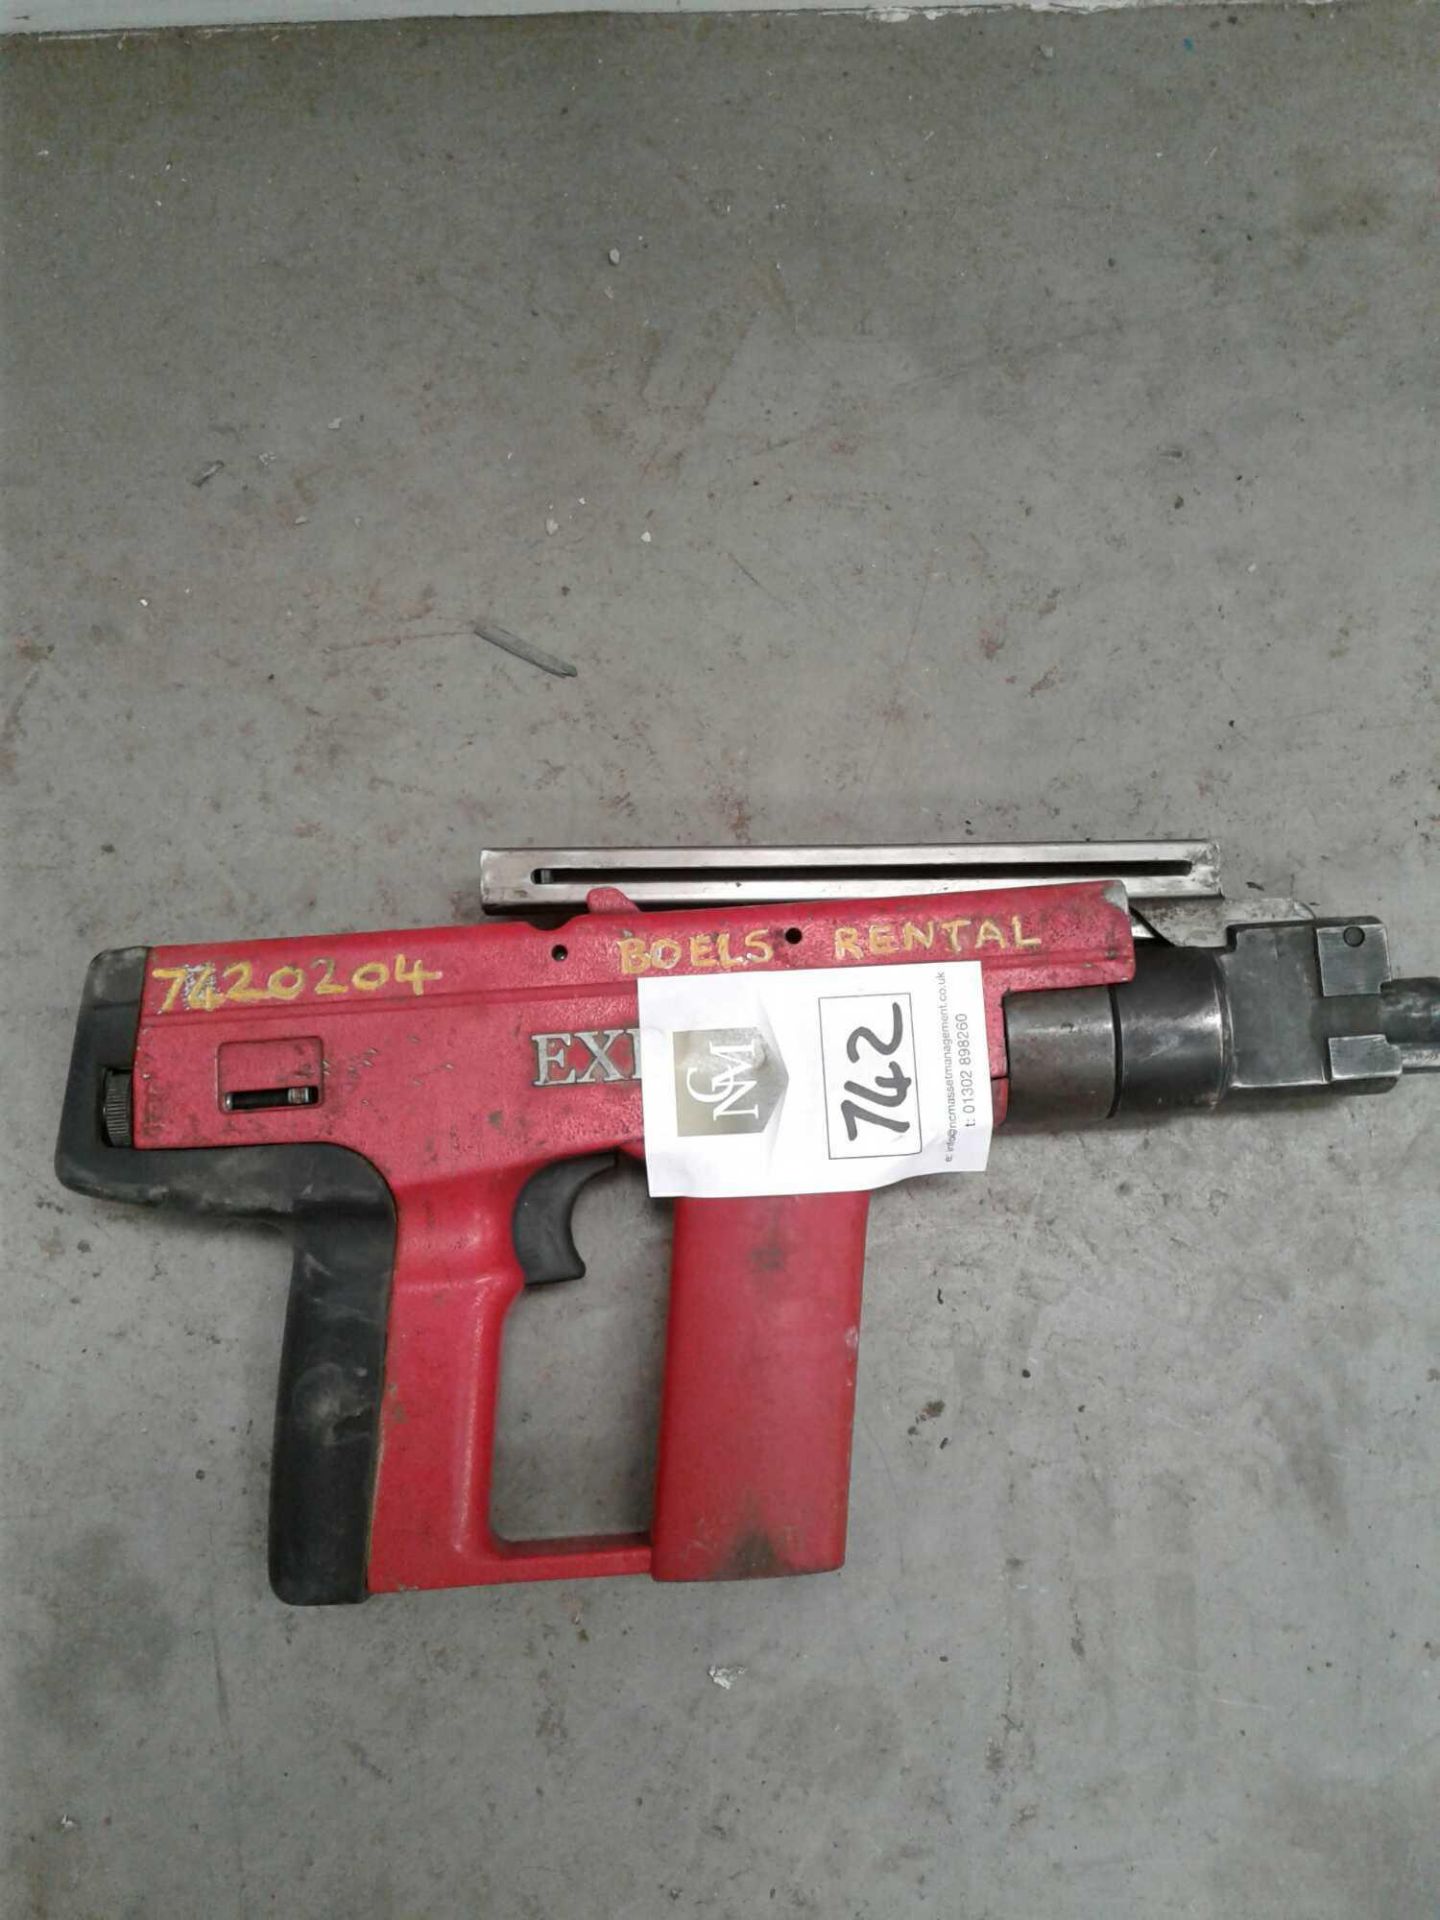 EXP 88 nail gun